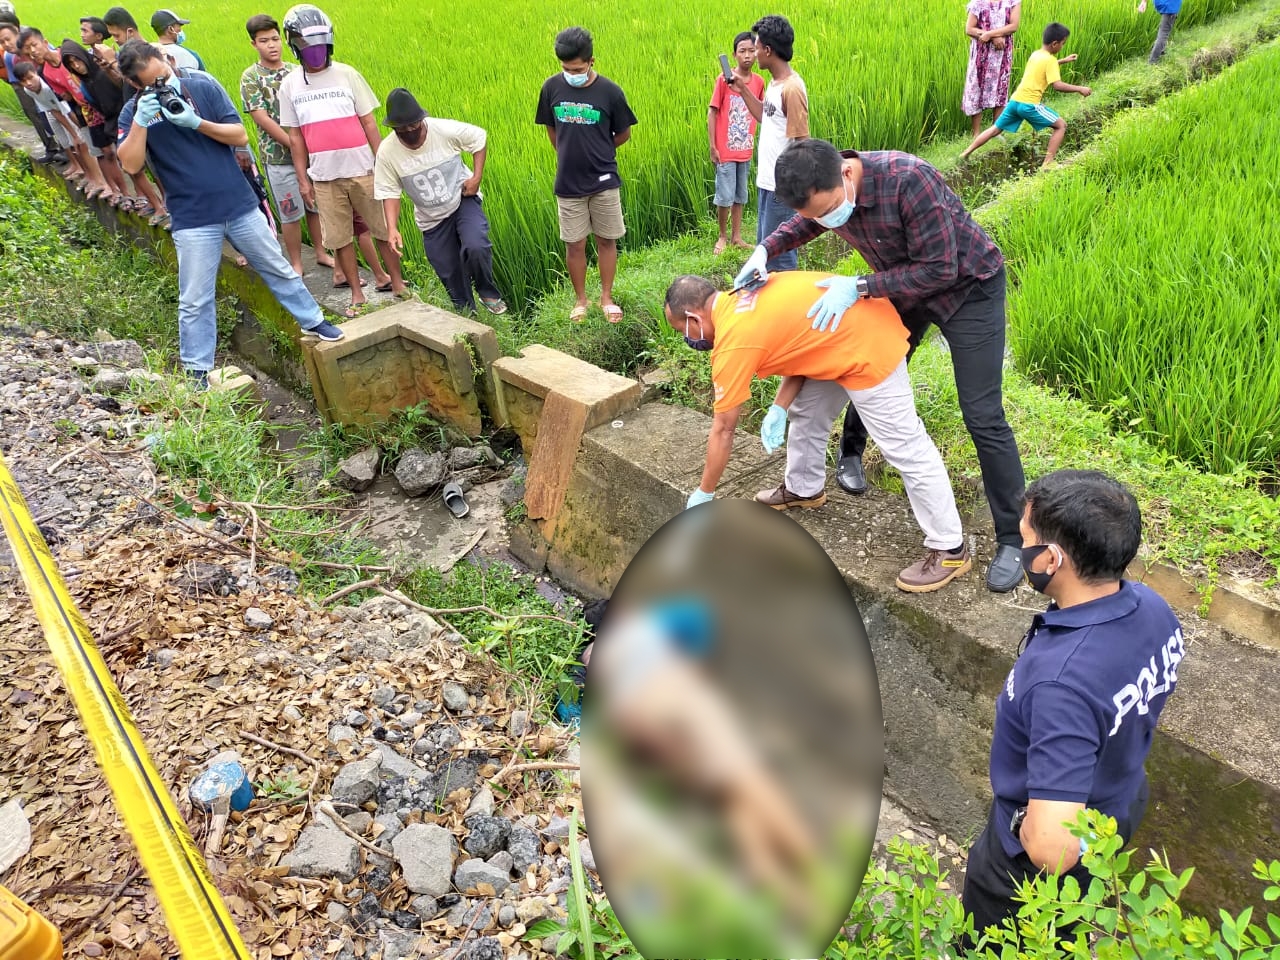 Korban sopir ojek online ditemukan tewas di area persawahan di daerah Purwoasri, Kabupaten Kediri. (Foto: Istimewa) 